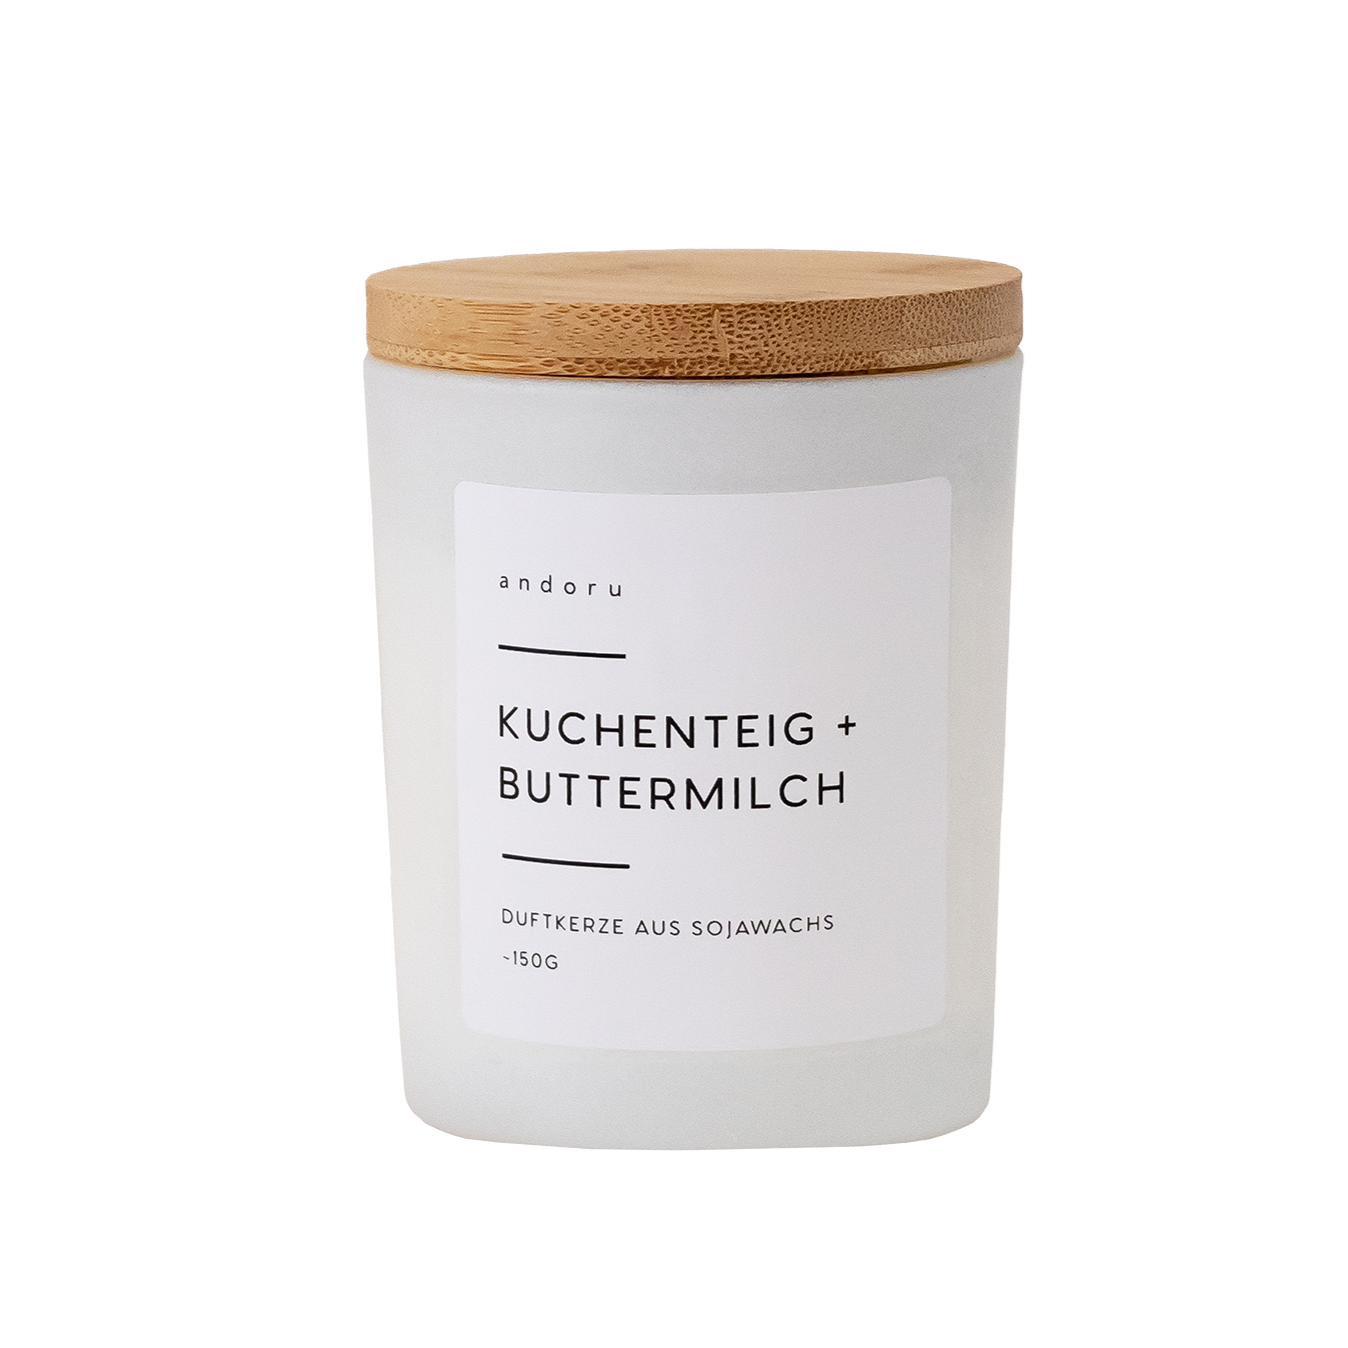 Kuchenteig + Buttermilch - andoru sojawachs duftkerze deko raumduft